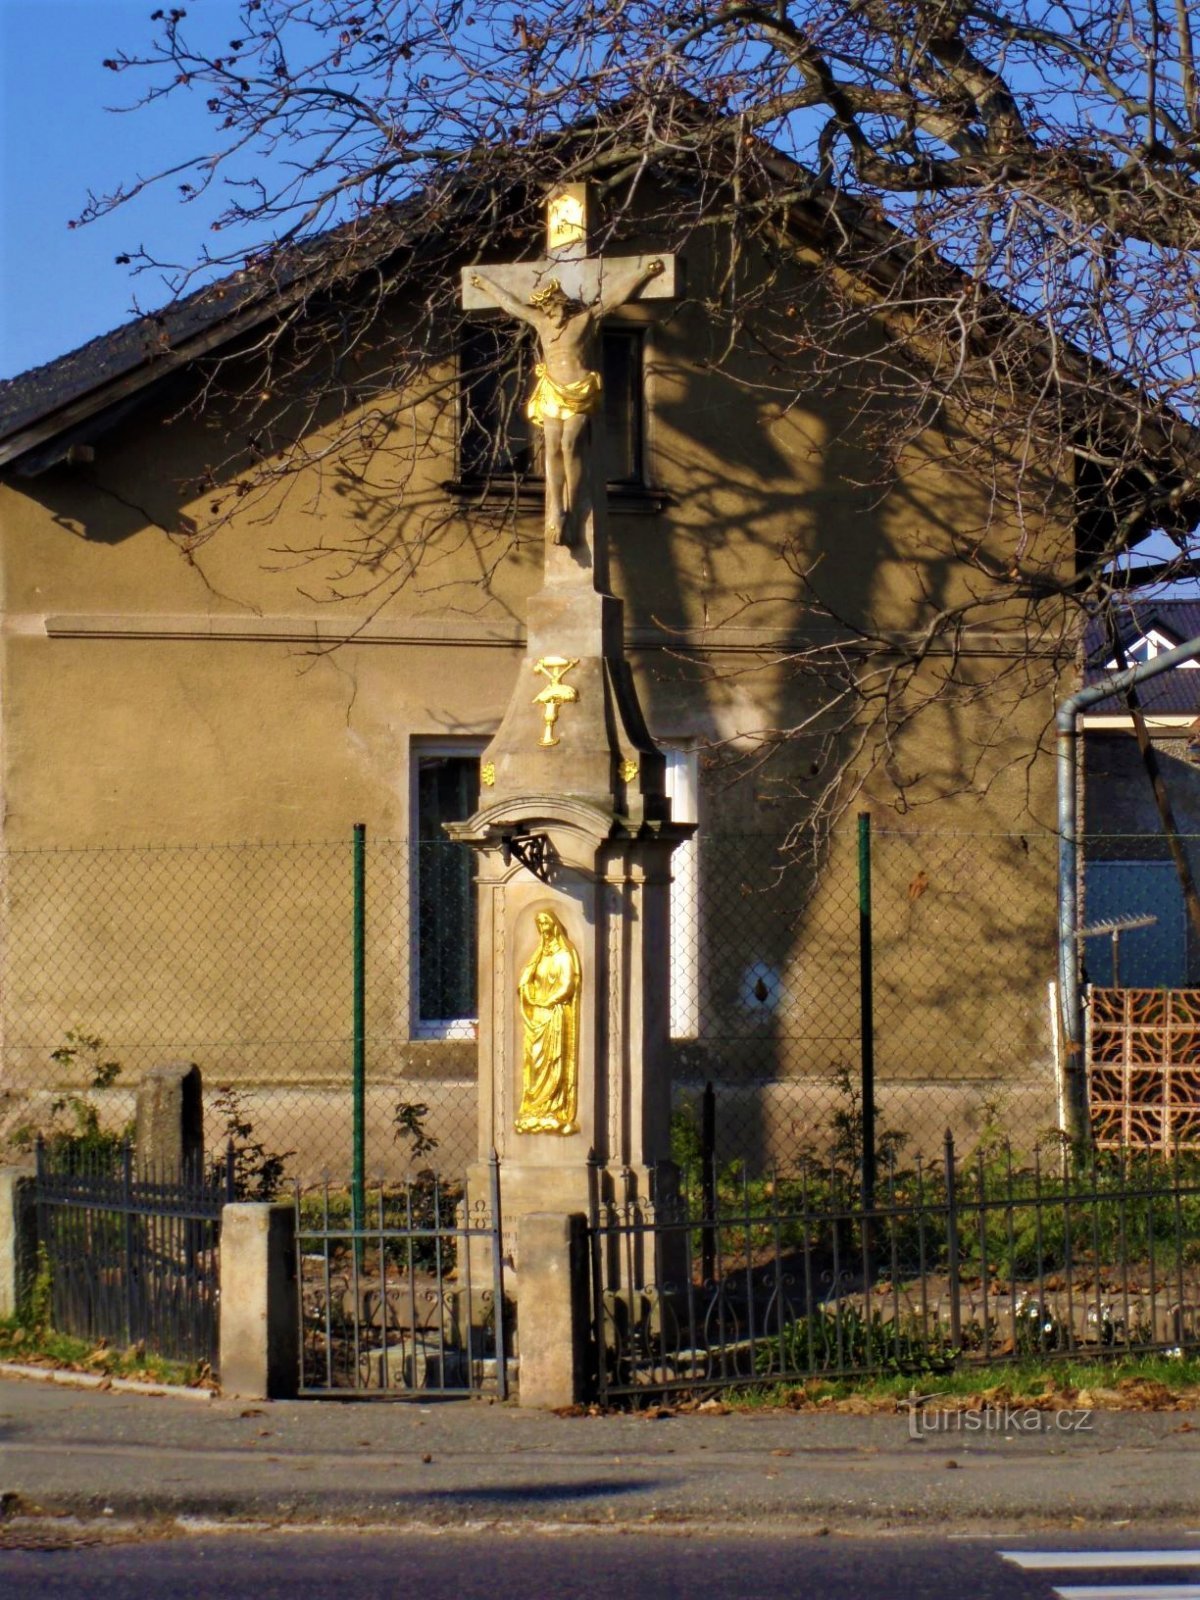 Σταυρός στο Věkošy (Hradec Králové, 30.10.2010)